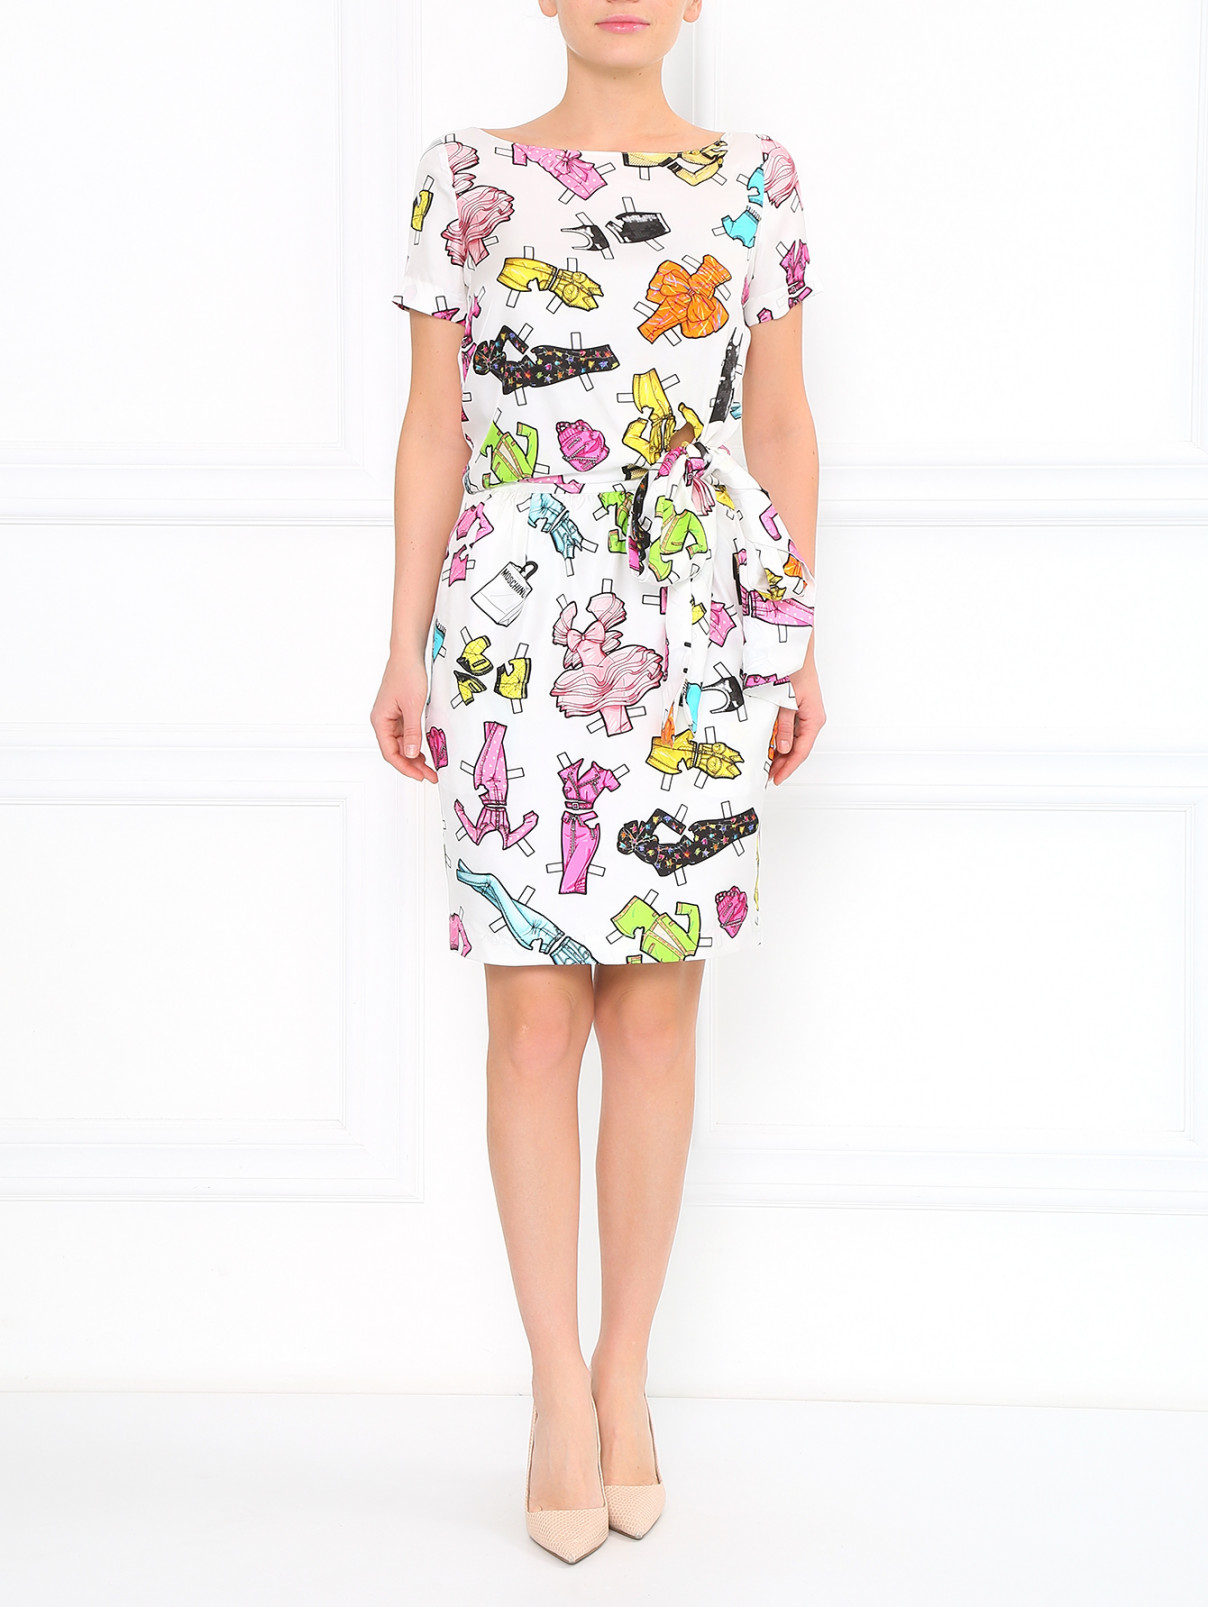 Шелковое платье с принтом Moschino  –  Модель Общий вид  – Цвет:  Белый